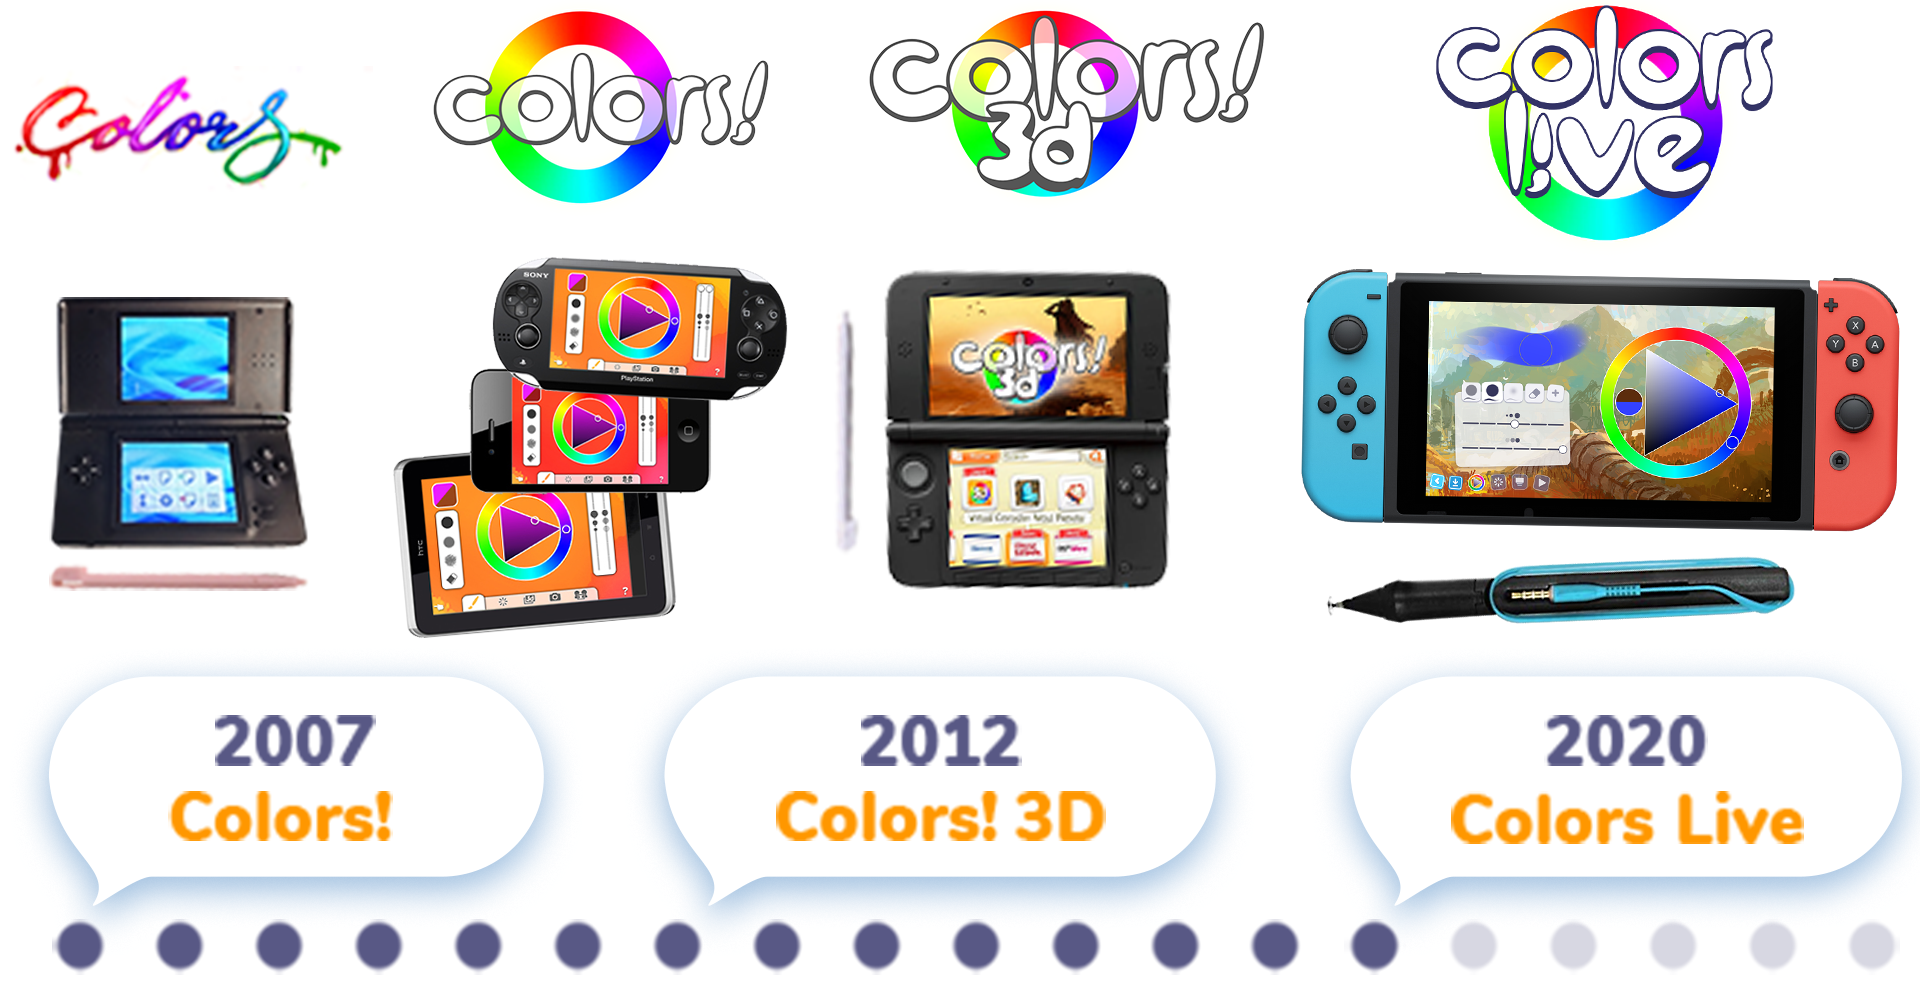 Colors Live - Metacritic